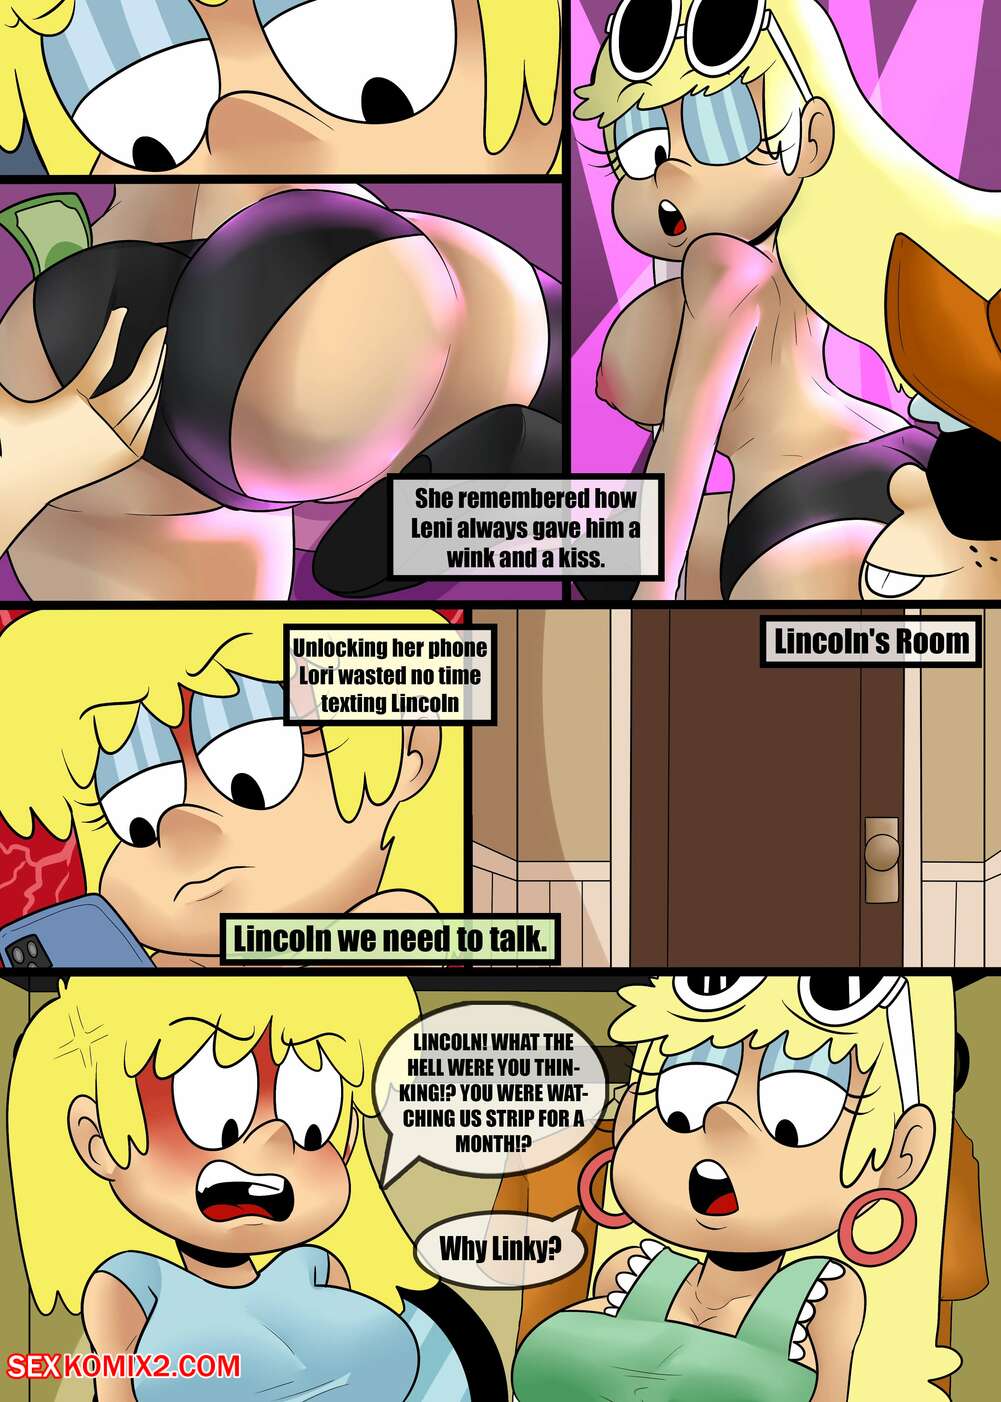 Ching Cartoon Nude - âœ…ï¸ Porn comic Louds in the club. Zaicomaster14 Sex comic busty blonde  noticed | Porn comics in English for adults only | sexkomix2.com